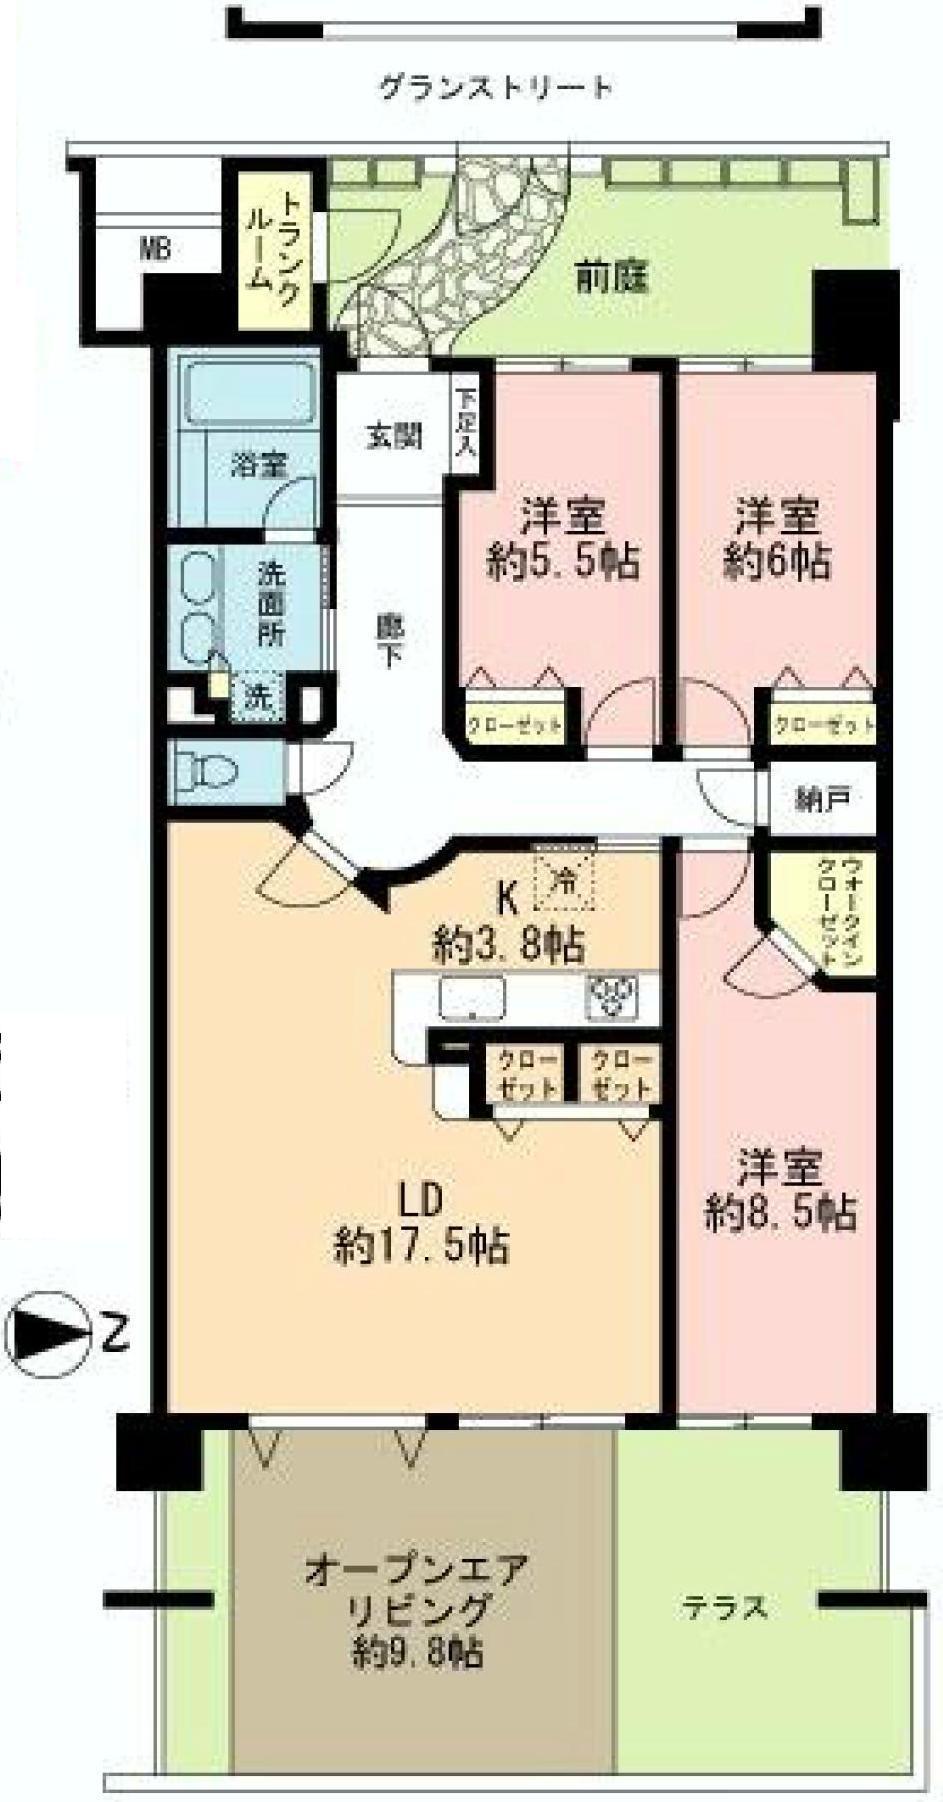 Floor plan. 3LDK, Price 25,500,000 yen, Footprint 100.61 sq m spacious easy-to-use floor plan!